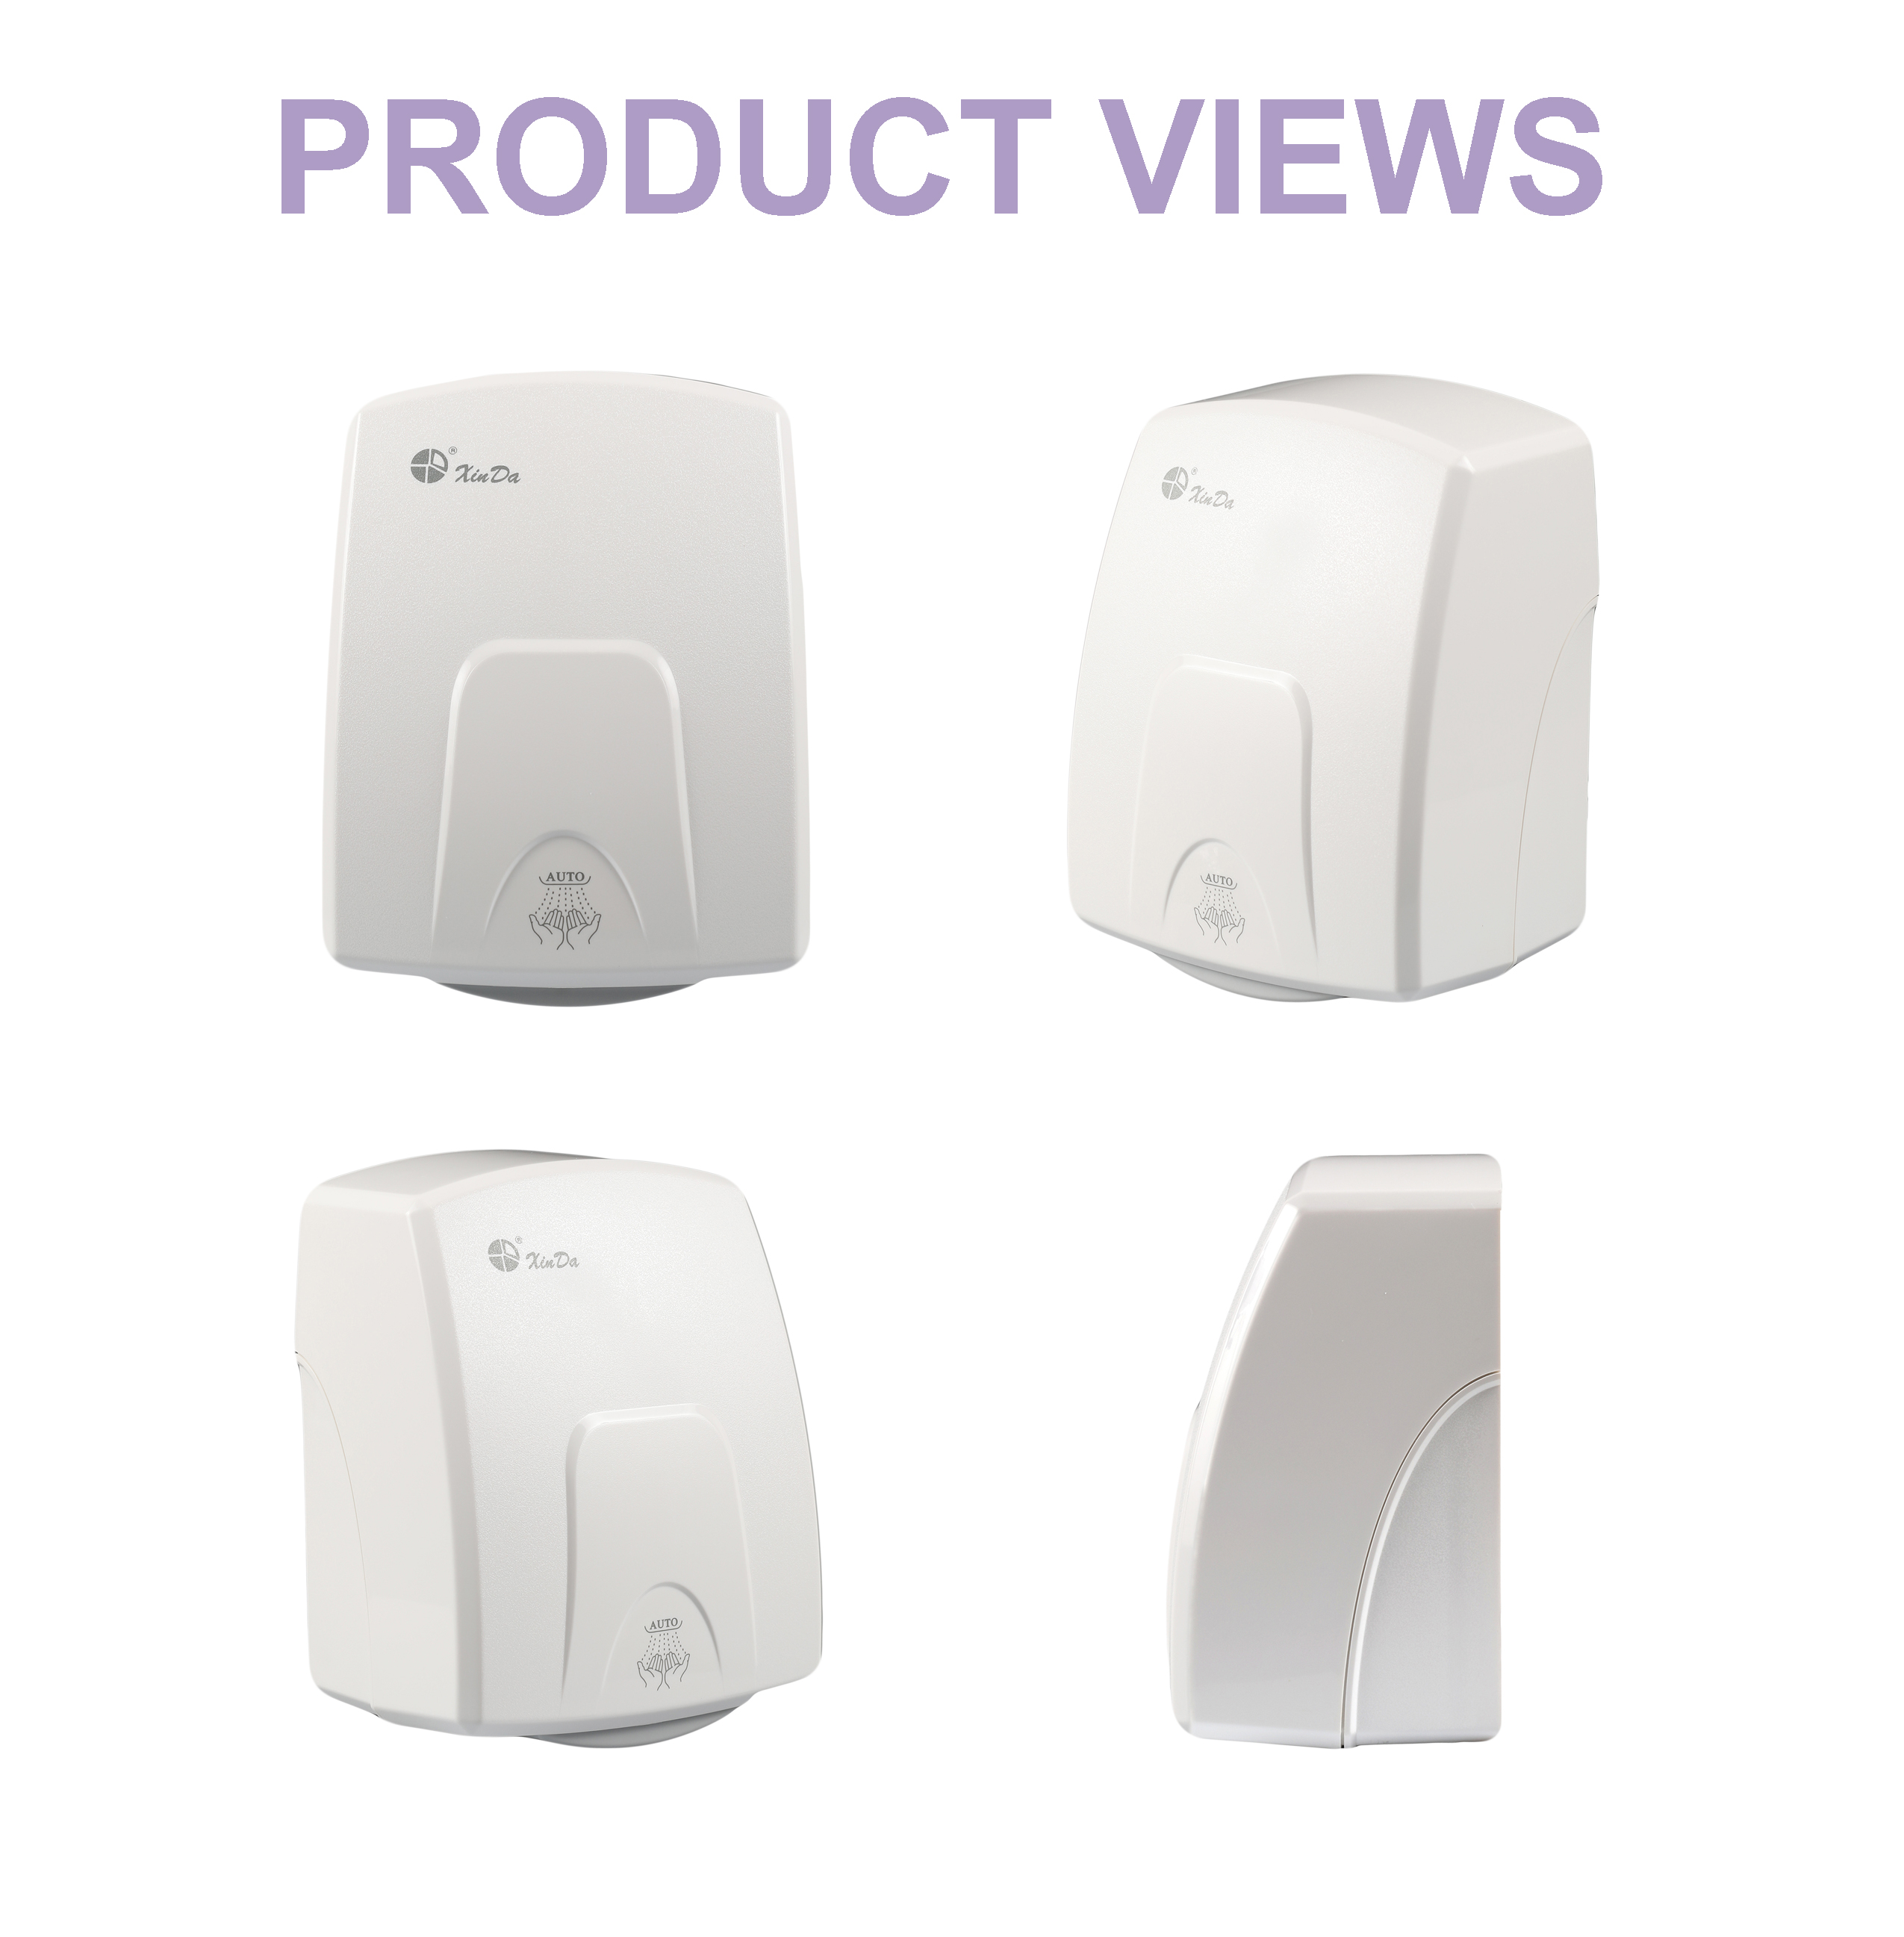 O sensor de lavagem XinDa GSQ150, secador de mãos livre, secador de mãos, torneiras para banheiro (USHD-1601) Secador de mãos